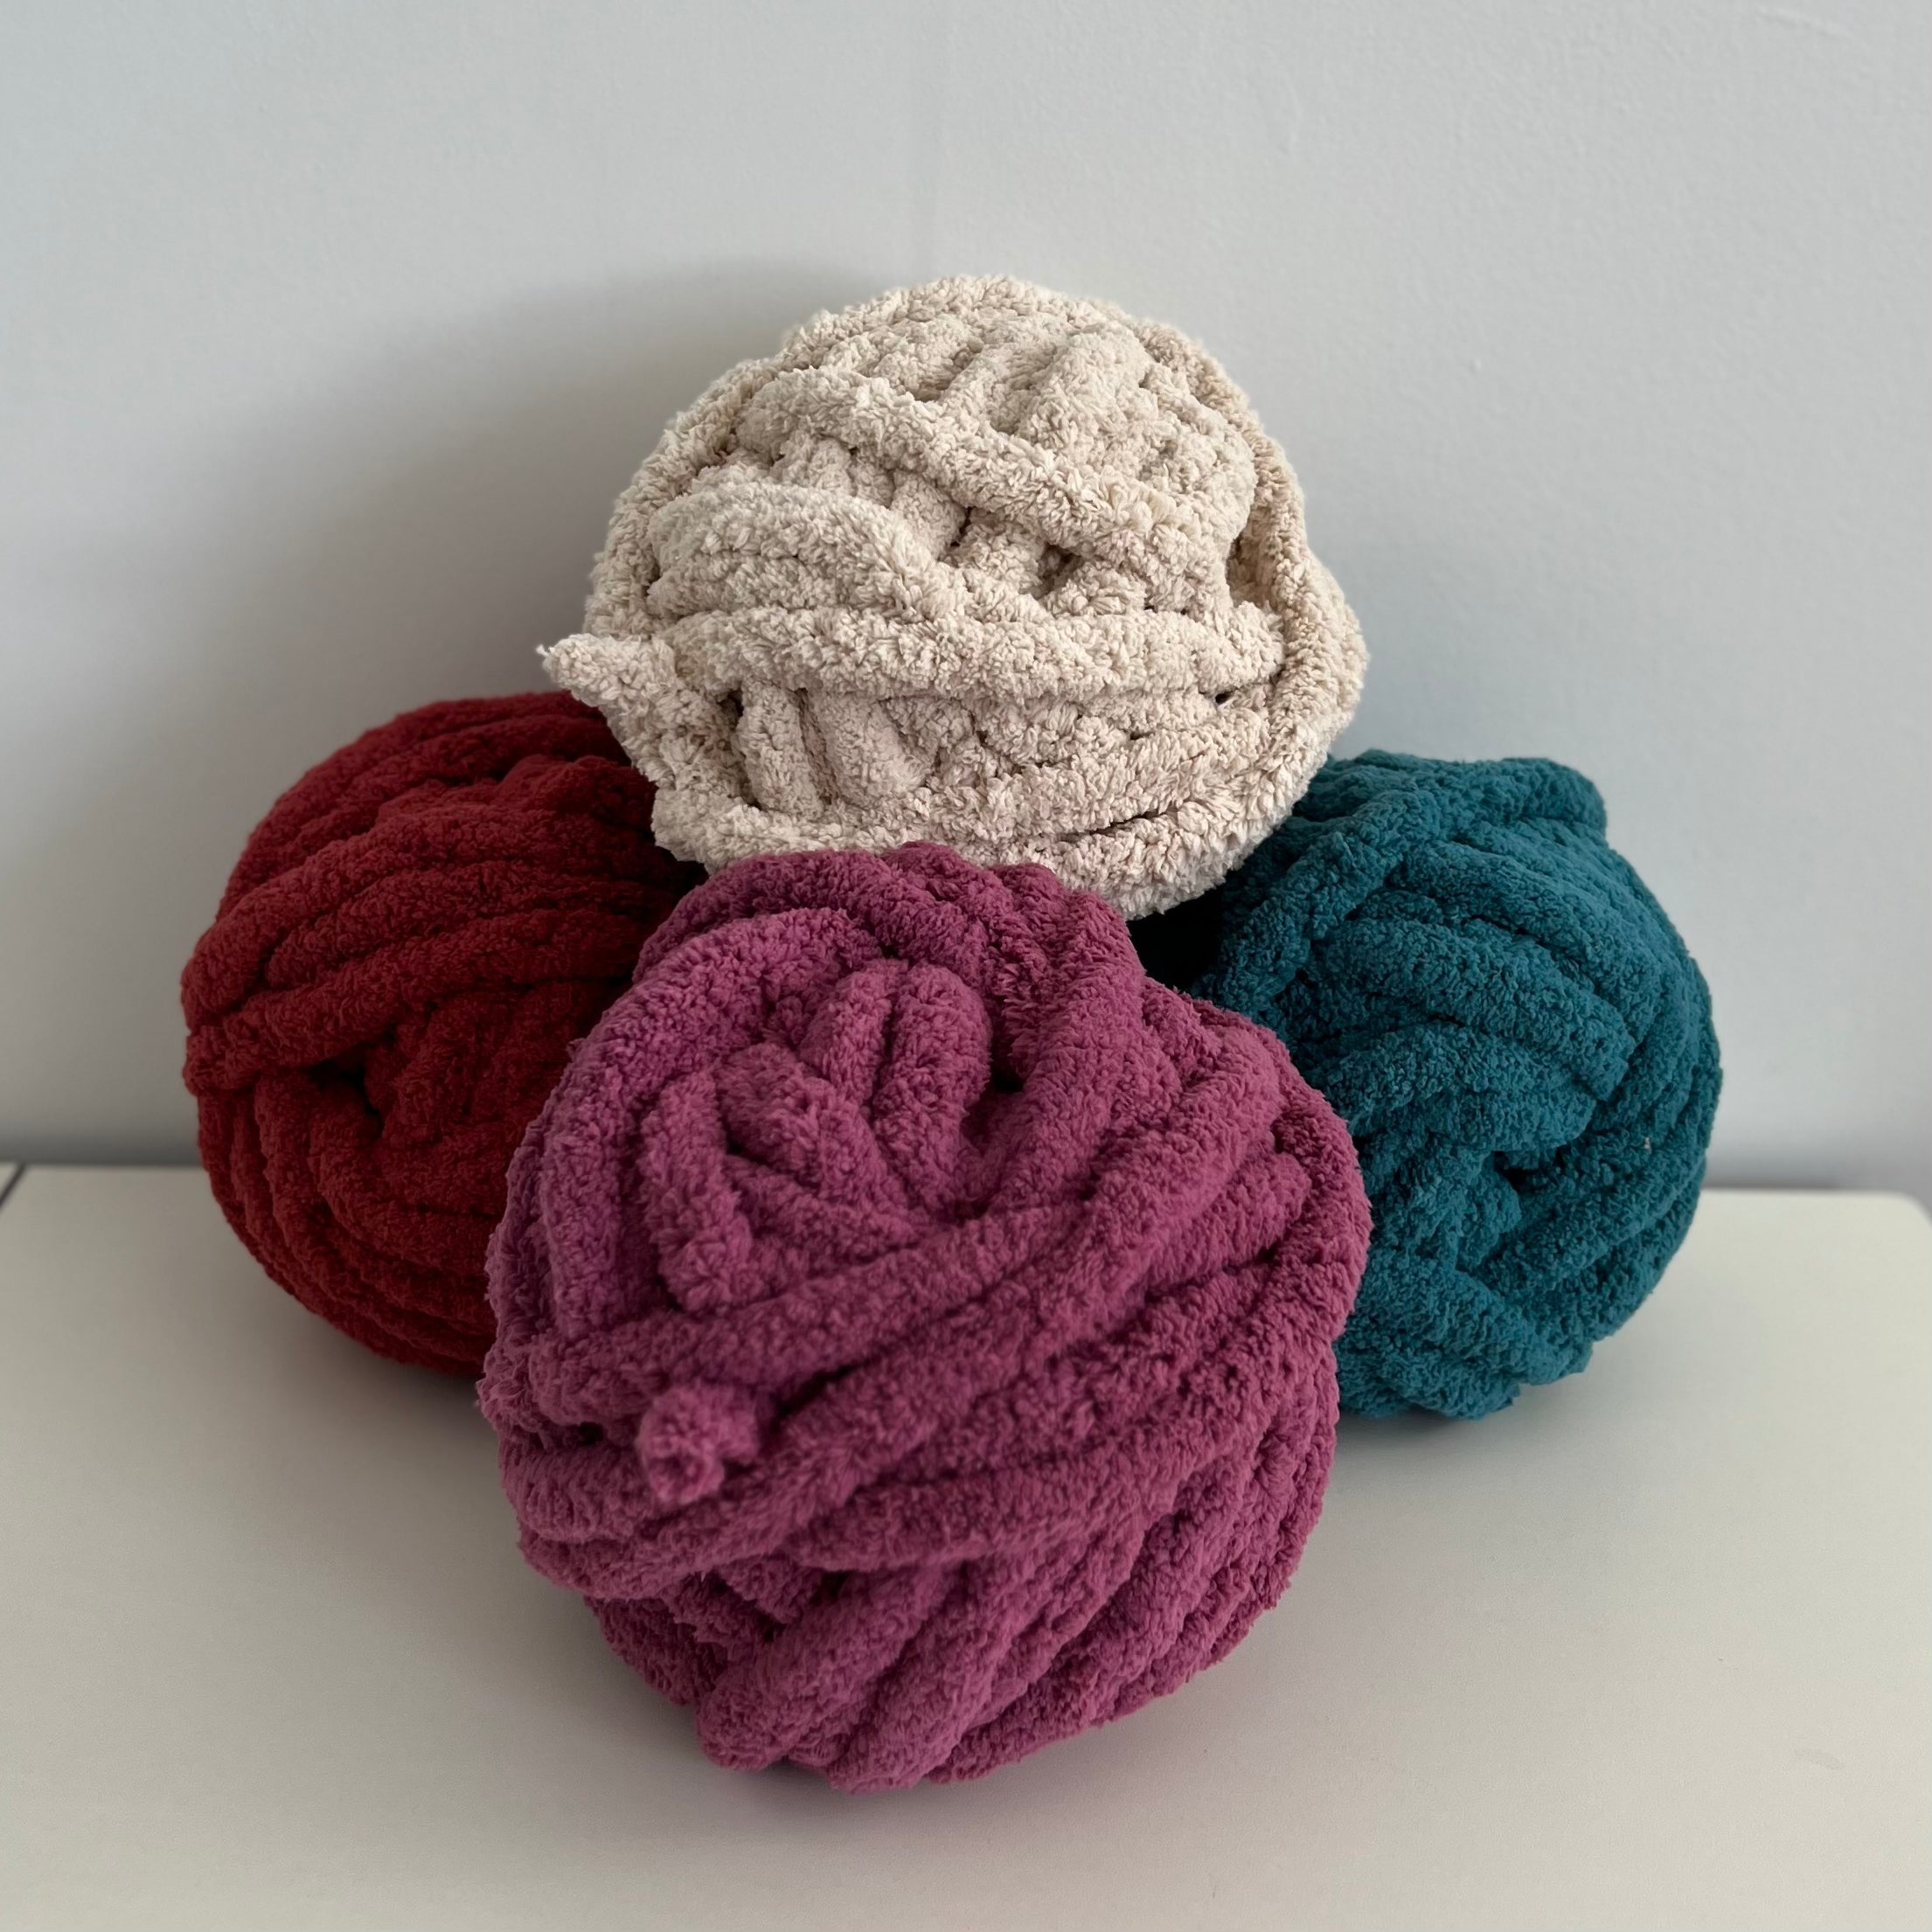 Cuddly Chenille Eco™ Yarn by Loops & Threads™ in Seafoam